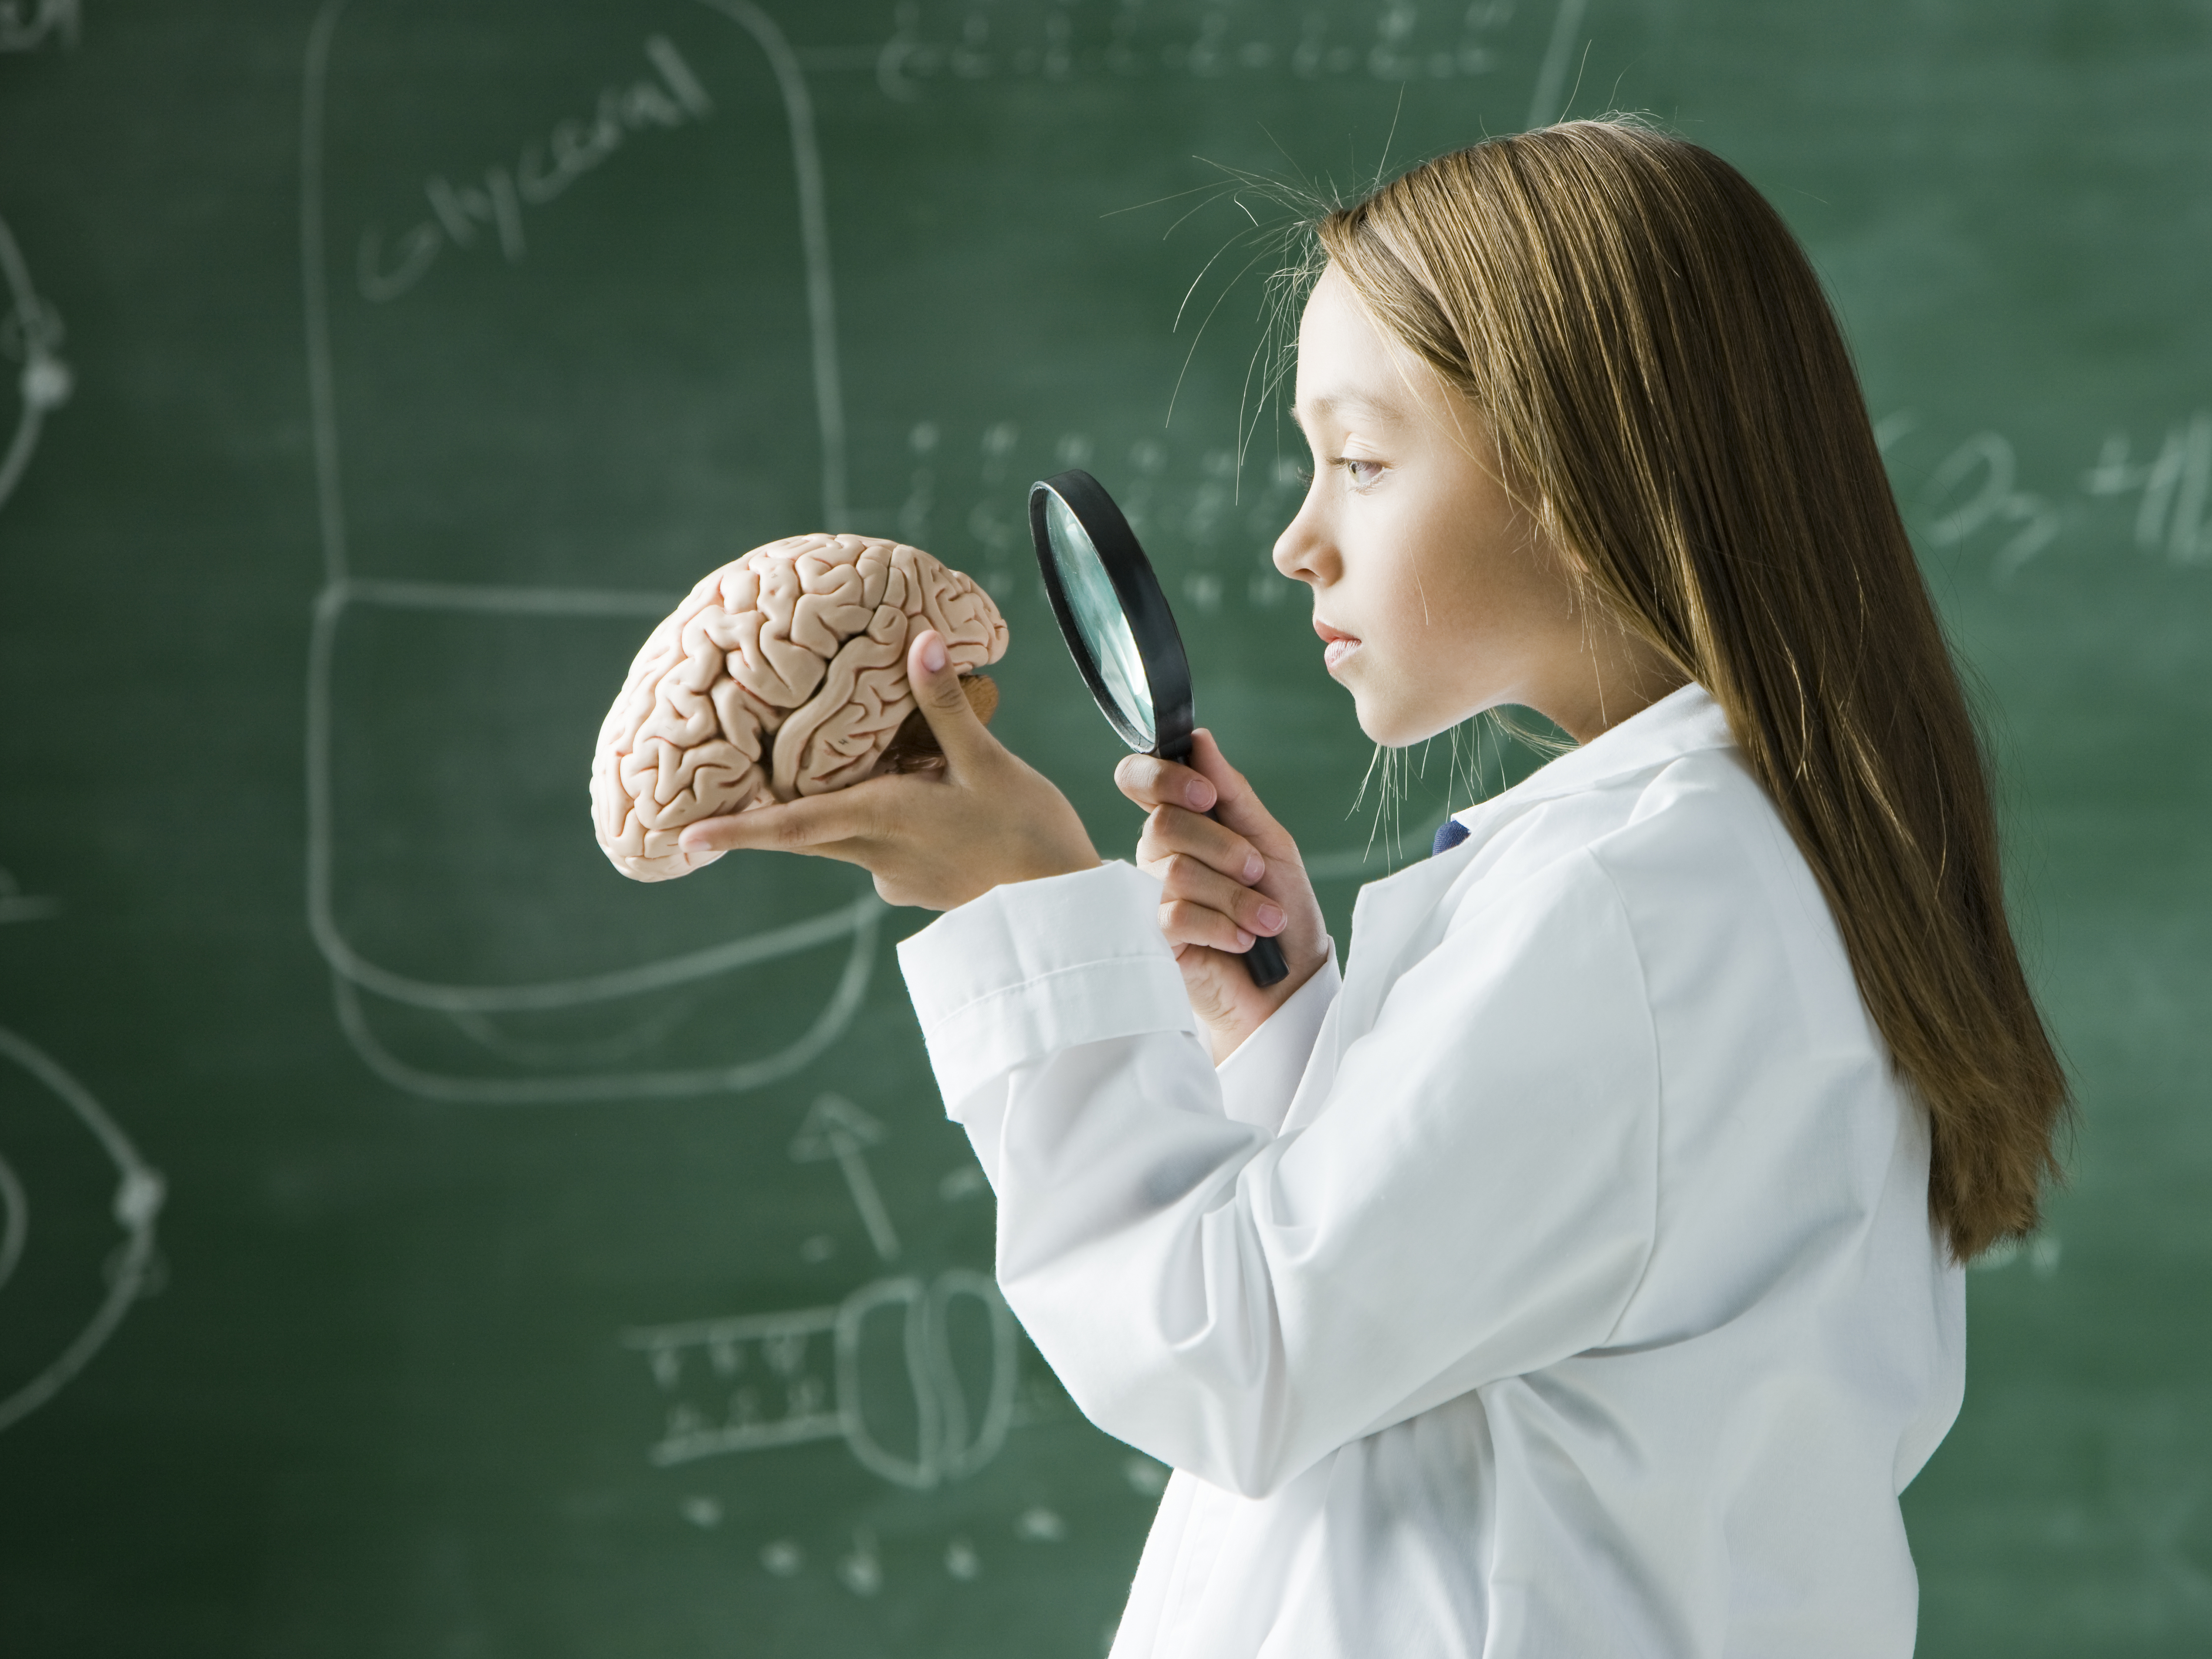 Развития способностей мозга. Мозг ребенка. Интеллект ребенка. Интеллектуальные и умственные способности. Урок биологии.